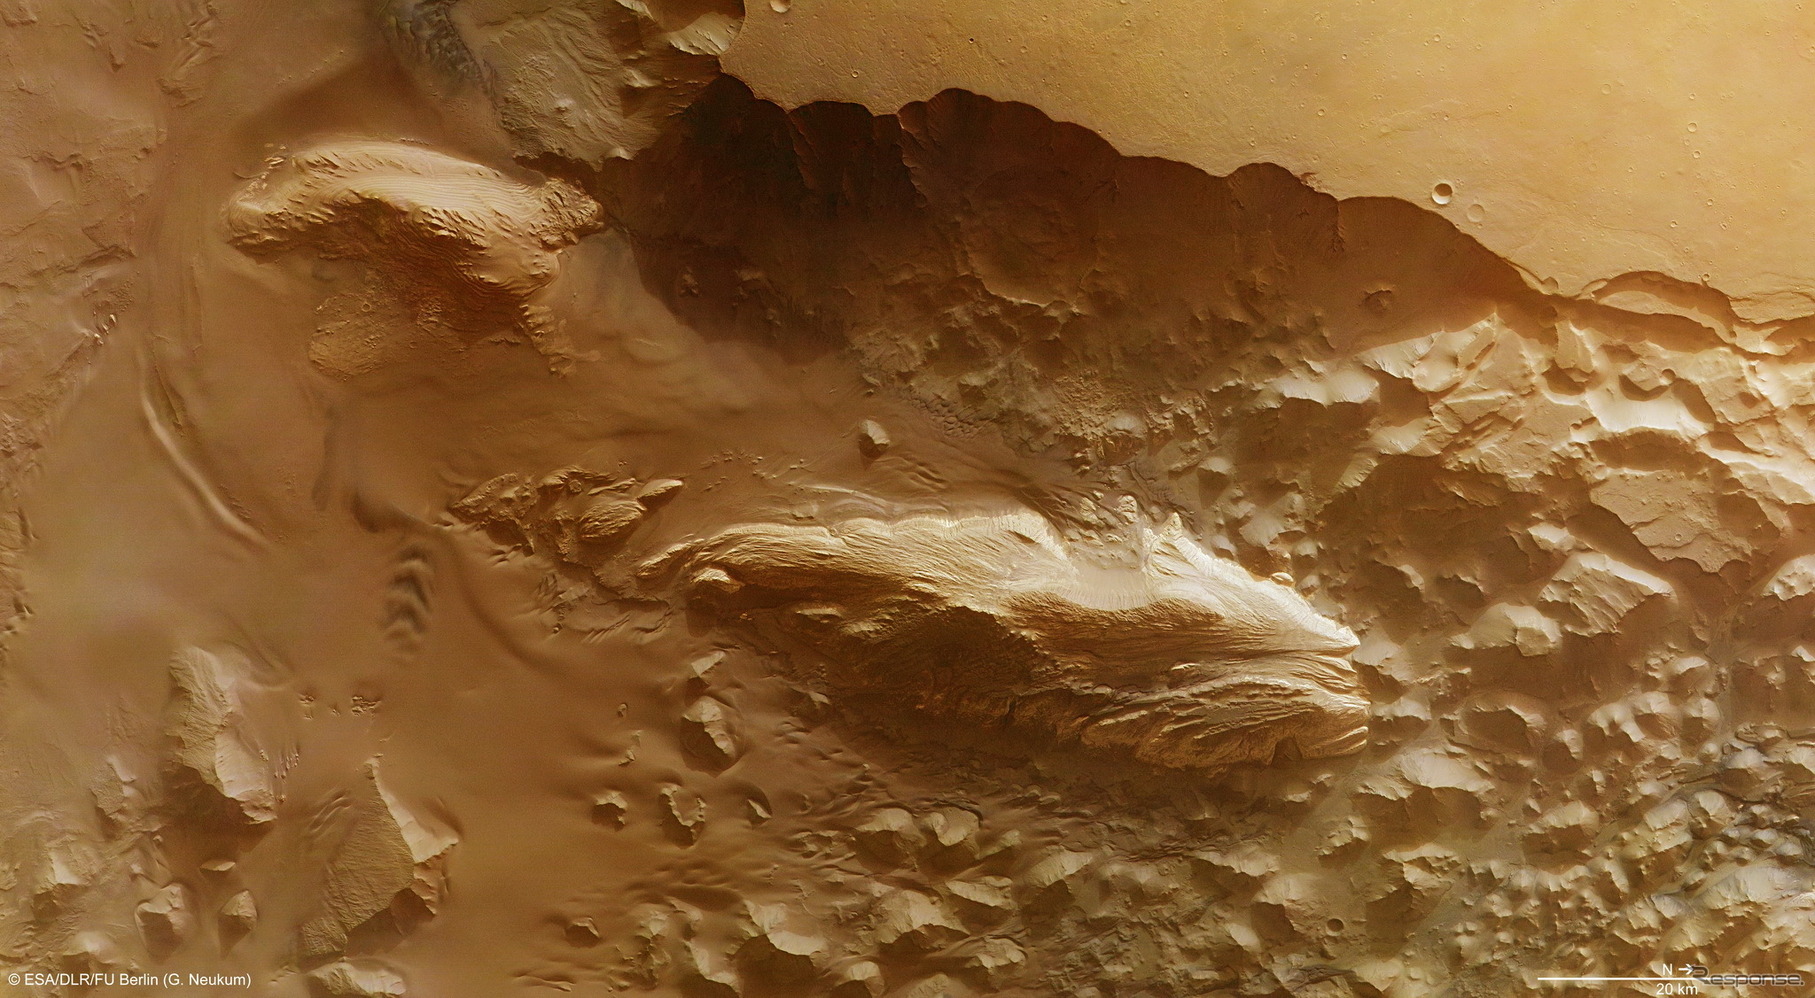 火星 横たわる化石のような硫酸塩の山 欧州火星探査機が撮影